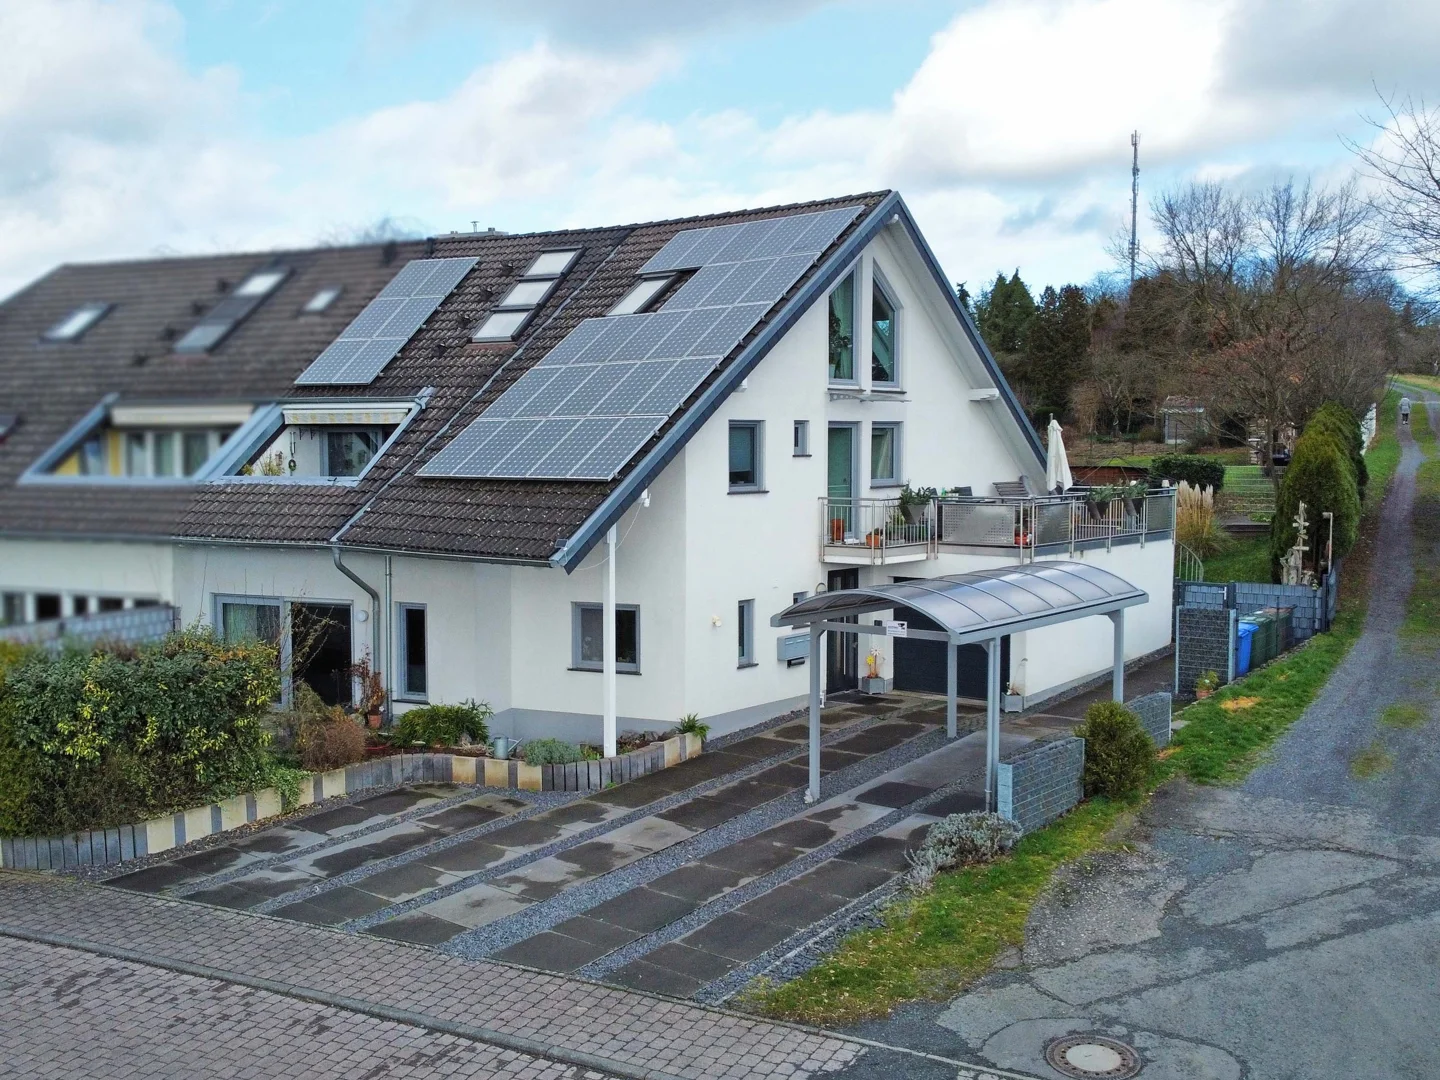 Energetisch modernisiertes Zweifamilienhaus mit PV-Anlage in Top Lage